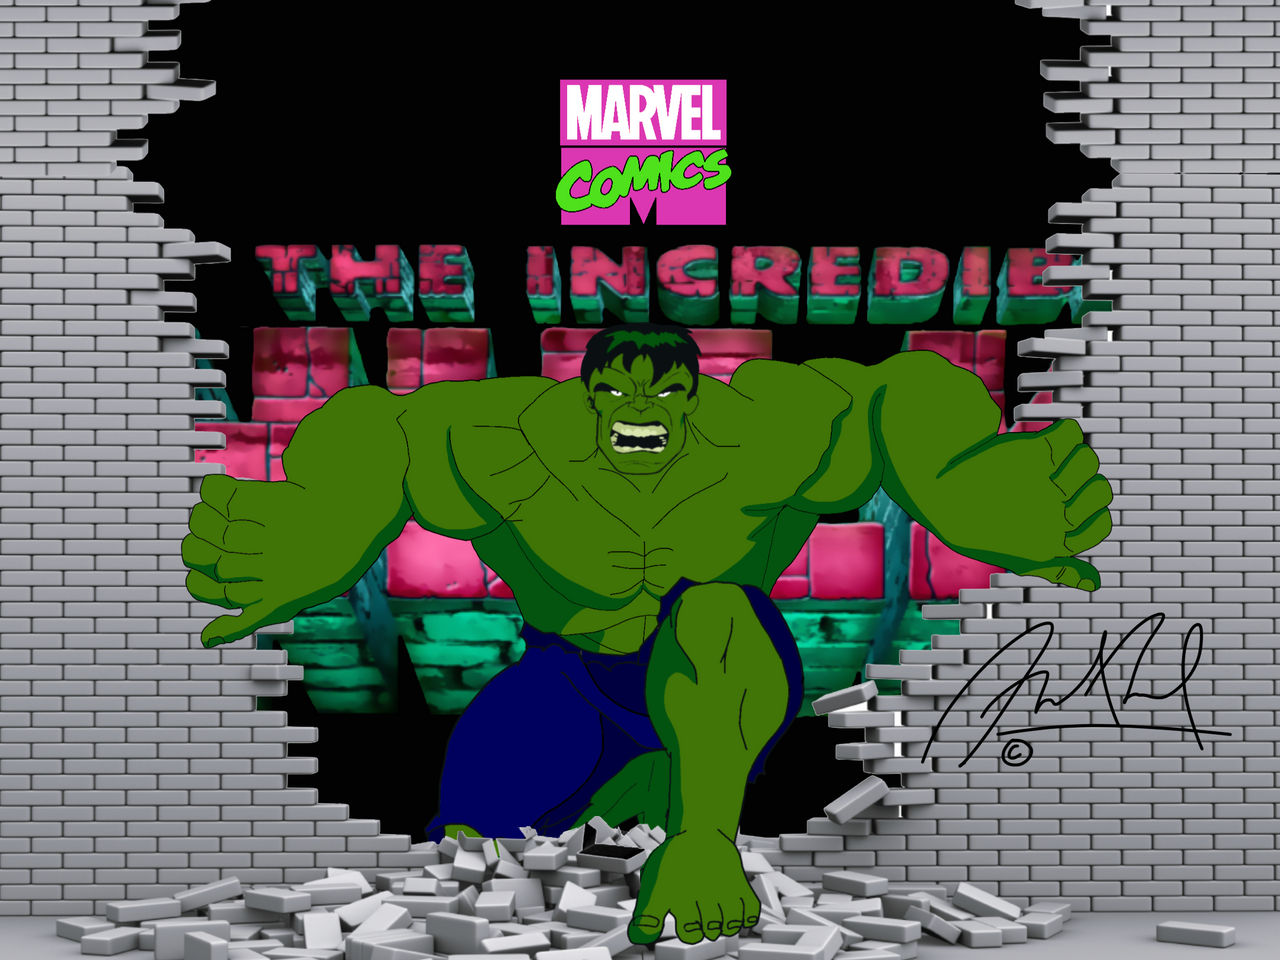 The Incredible Hulk (1996 Cartoon) Fan Art by Me by shozua on DeviantArt